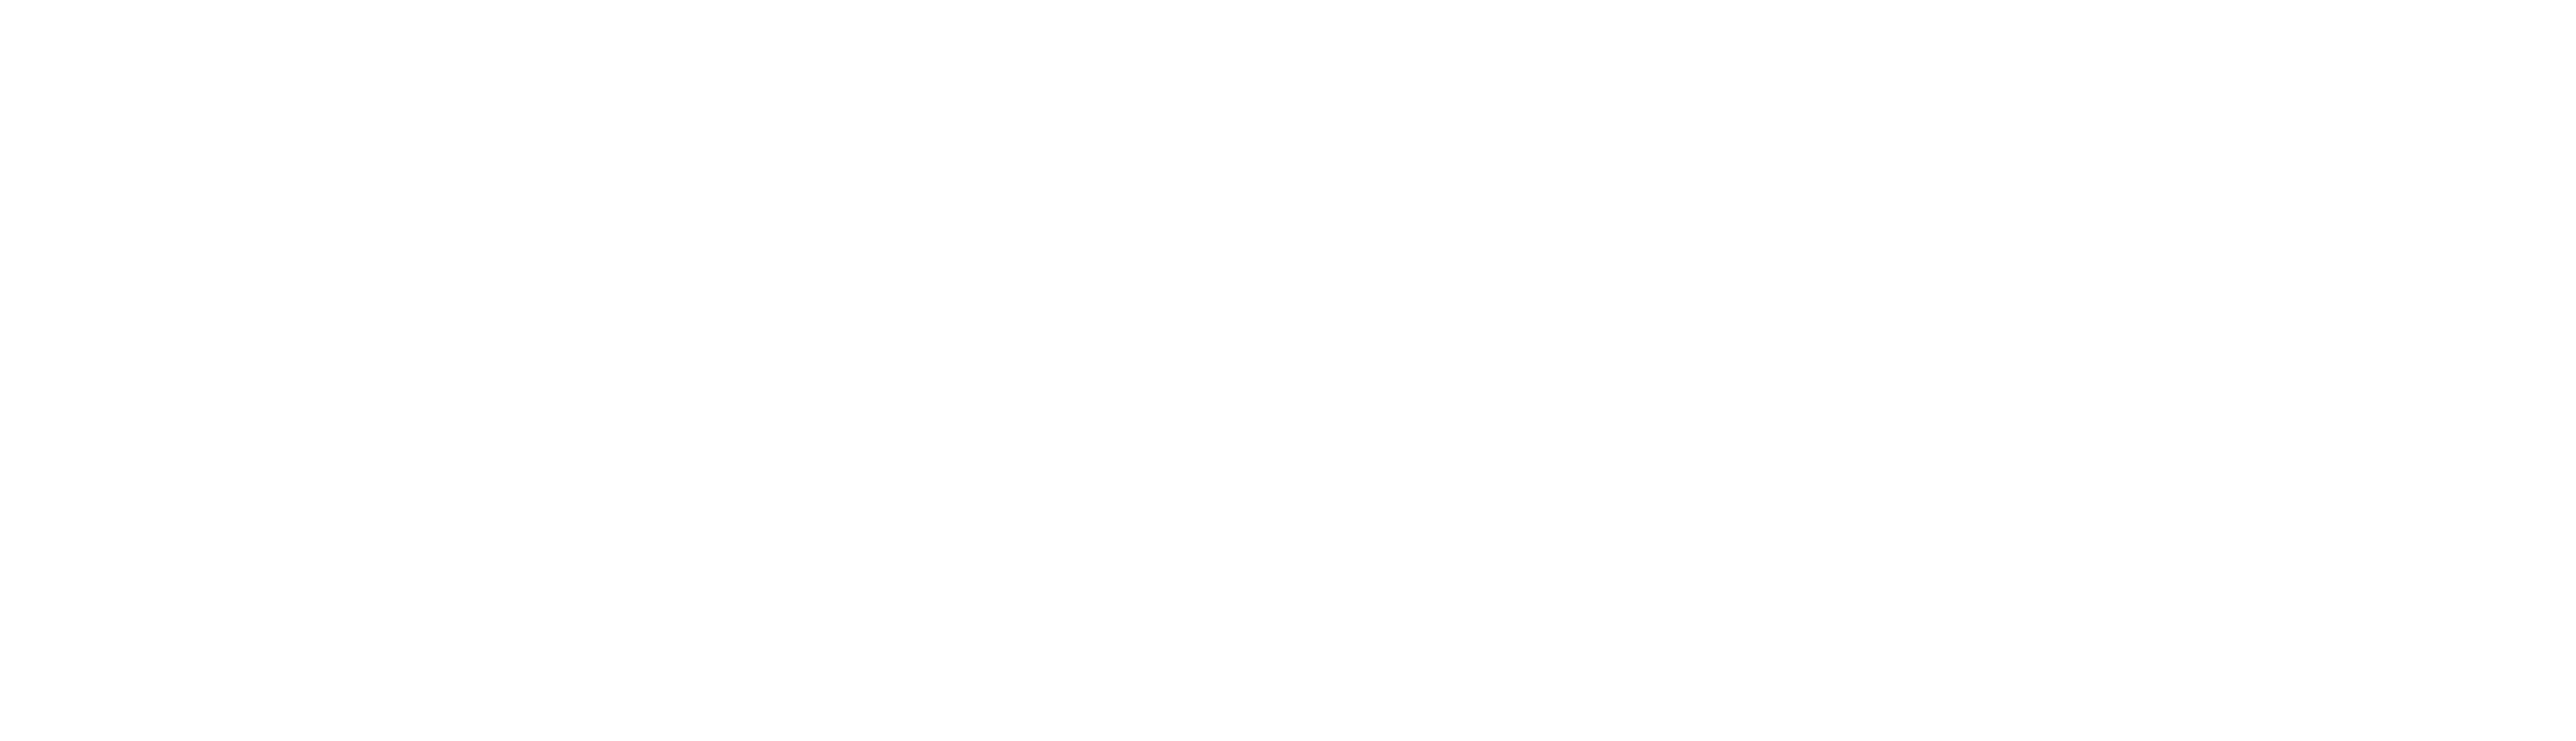 Janissa Spa white Logo